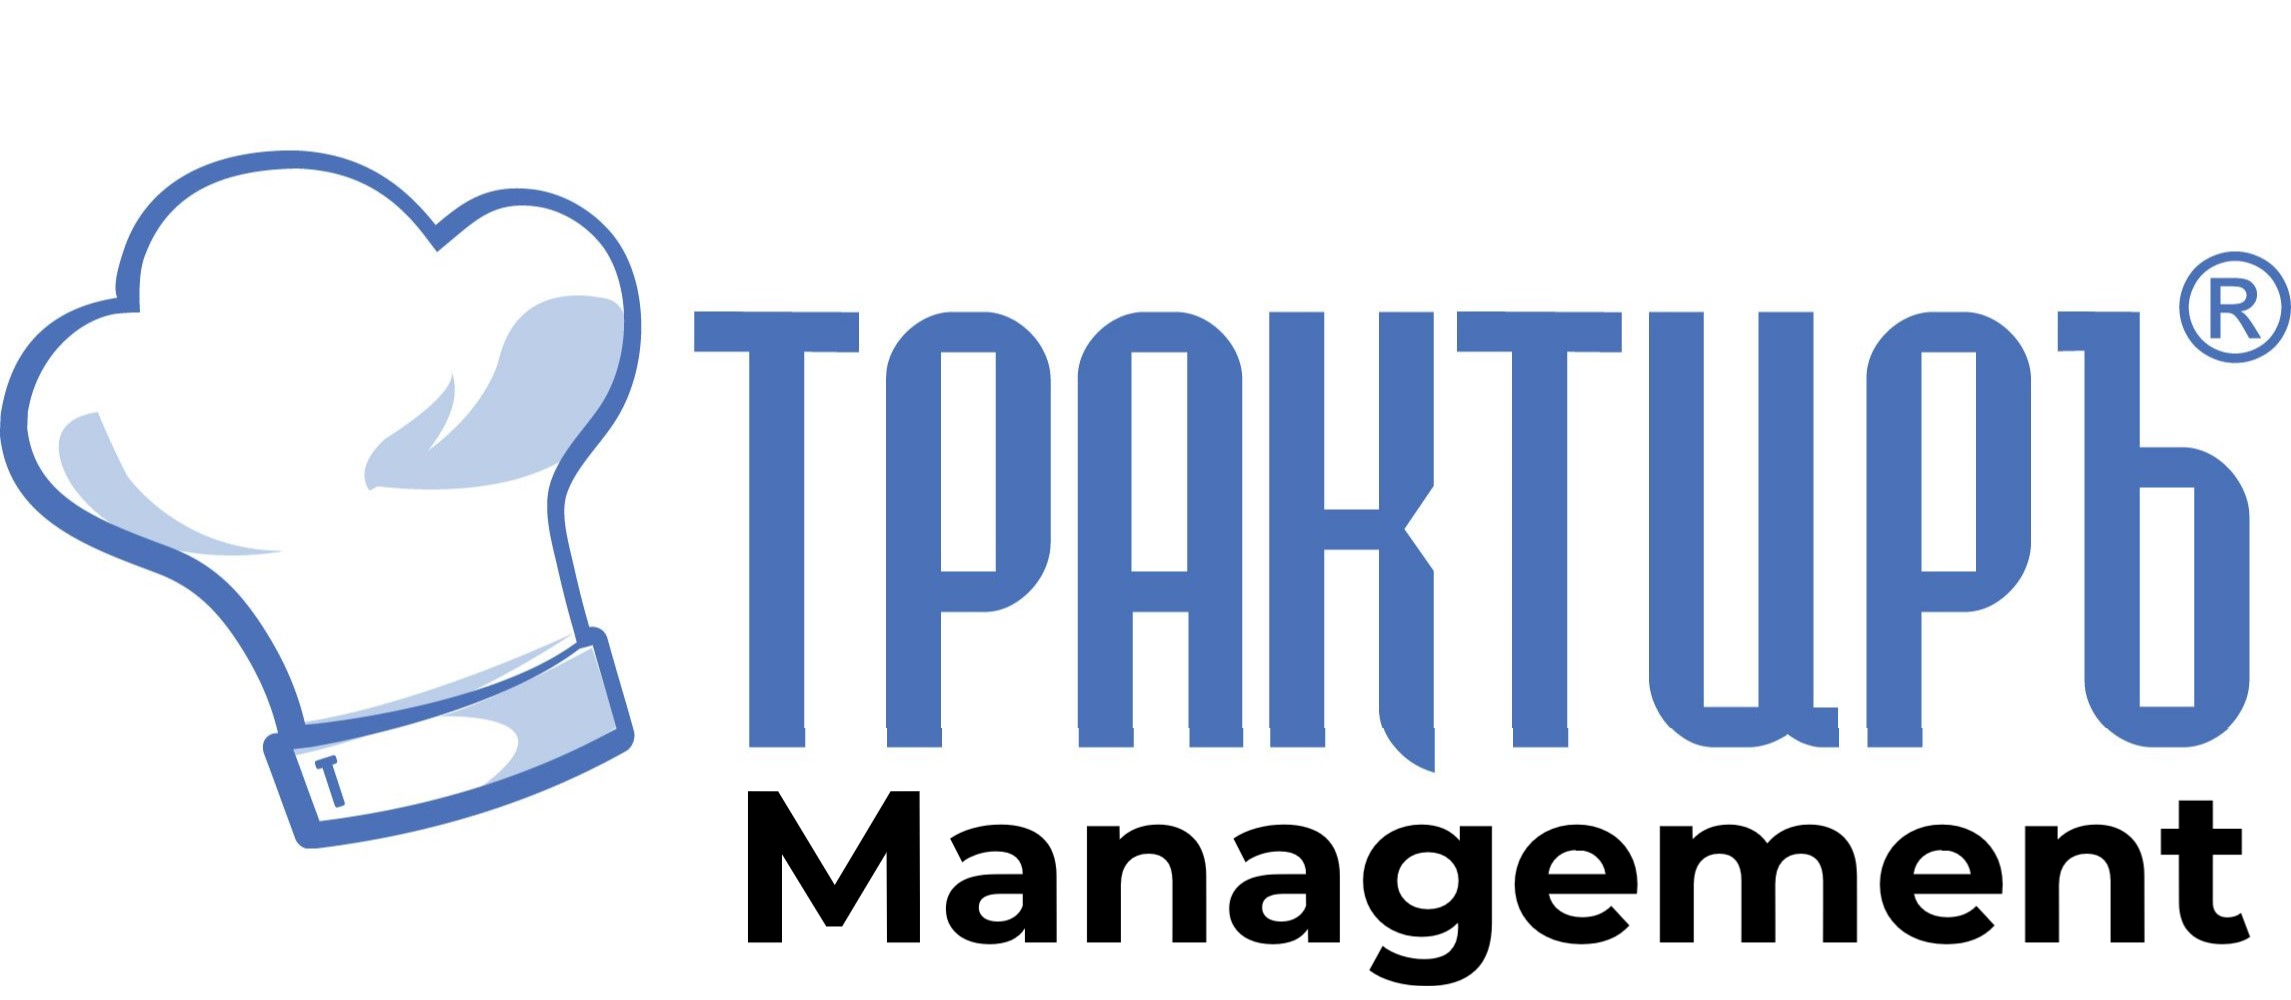 Трактиръ: Management в Таганроге